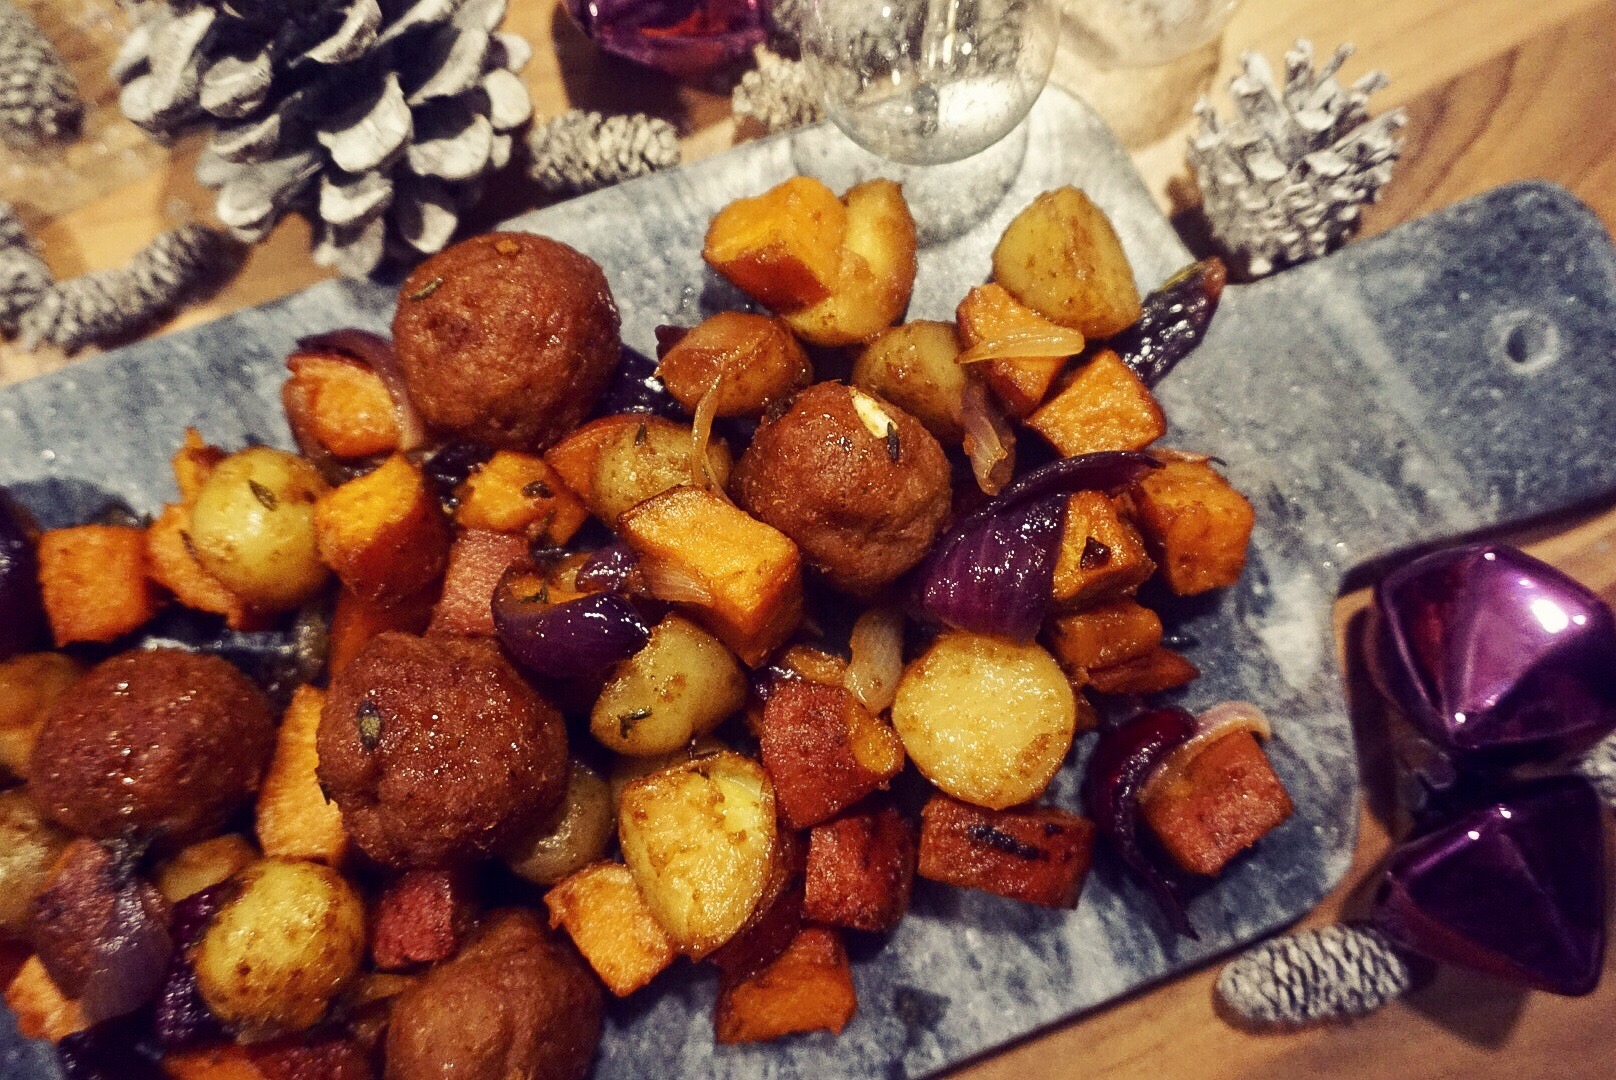 gezellige ovenschotel met krieltjes, zoete aardappel rode uit kipgehaktballetjes diner recept uit de oven gymjunkies kerstmenu 2018 stance van lieshout